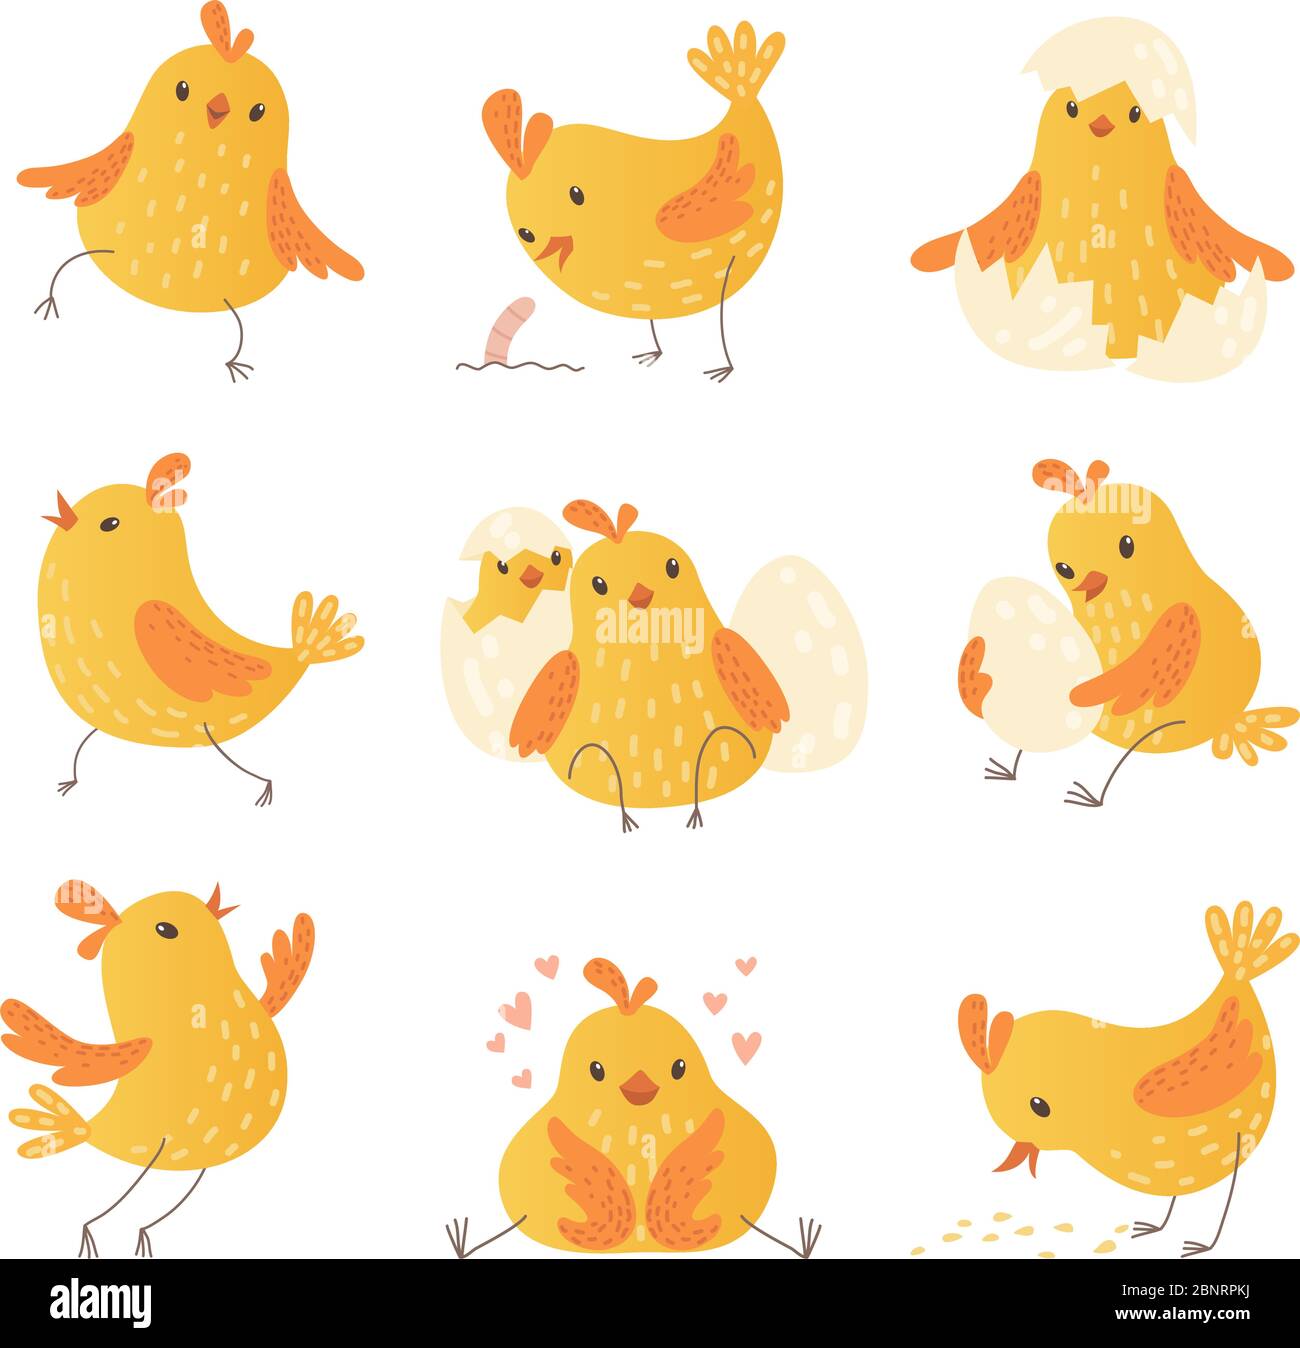 Cartoon-Huhn. Ei niedlichen gelben kleinen Bauernhof Vögel lustig Küken Vektor Zeichen Sammlung Stock Vektor